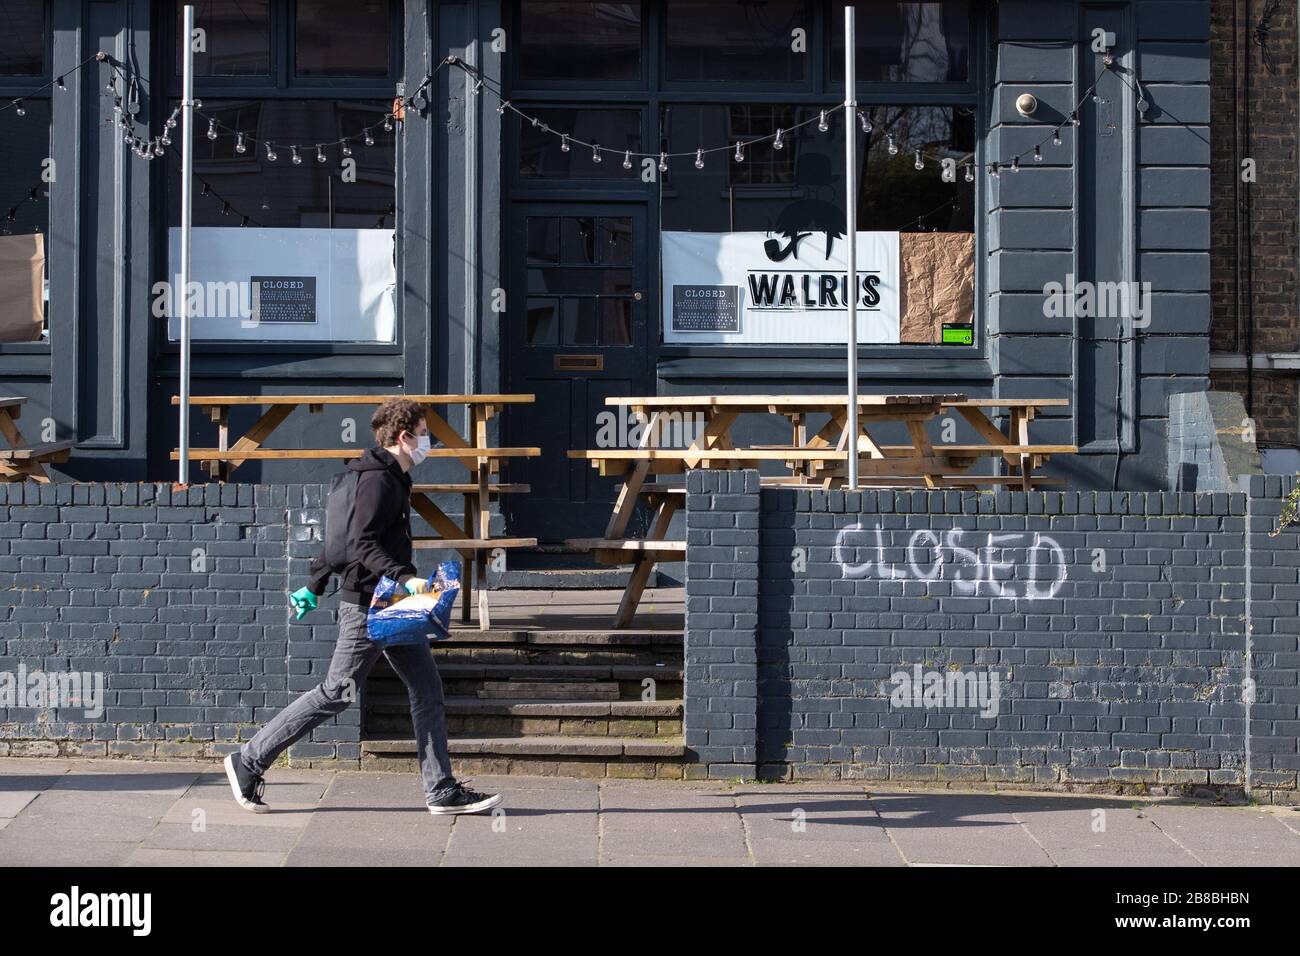 Allgemeiner Blick auf eine geschlossene Kneipe in New Cross im Süden Londons, nachdem die Regierung die Schließung von Bars, Clubs und Restaurants aufgrund des Ausbruchs von Coronavirus angeordnet hatte. Stockfoto